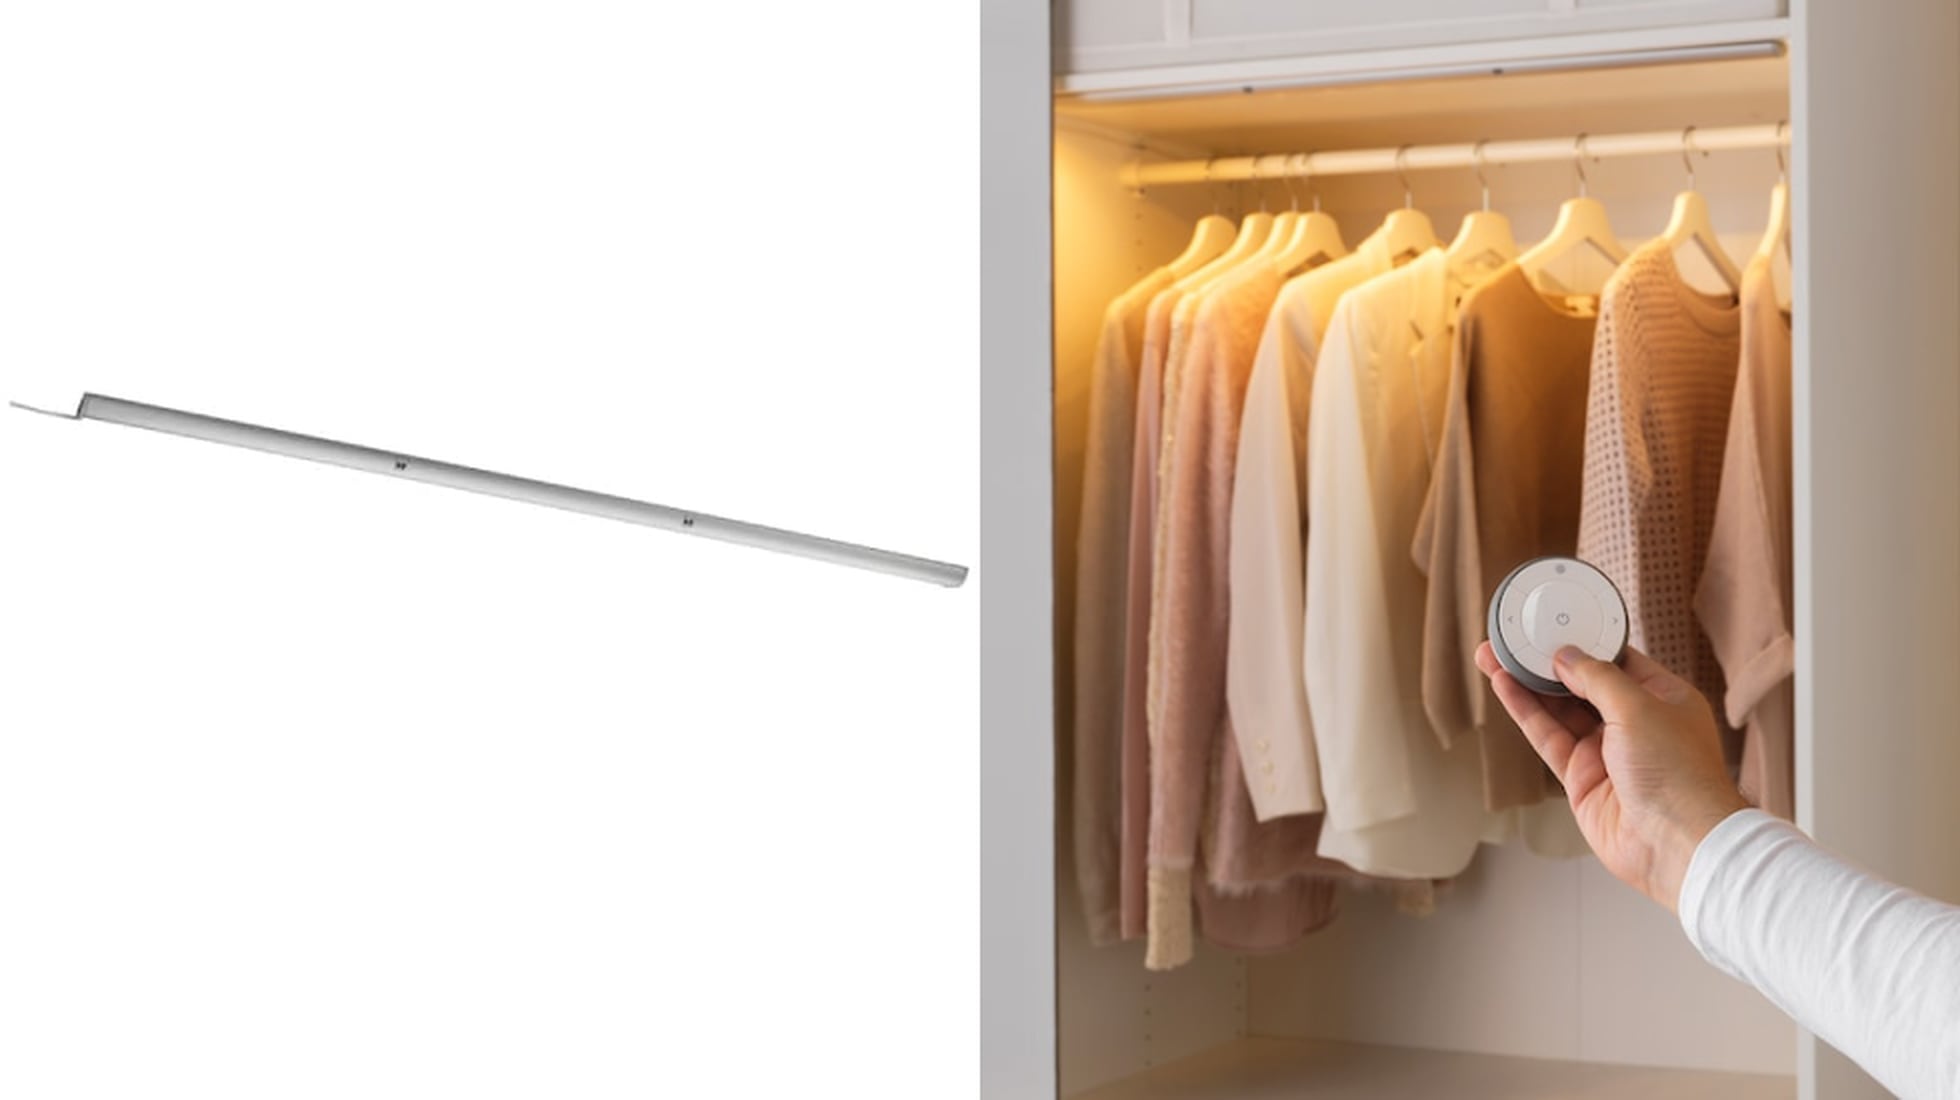 Siete soluciones para iluminar los armarios, fáciles de colocar y